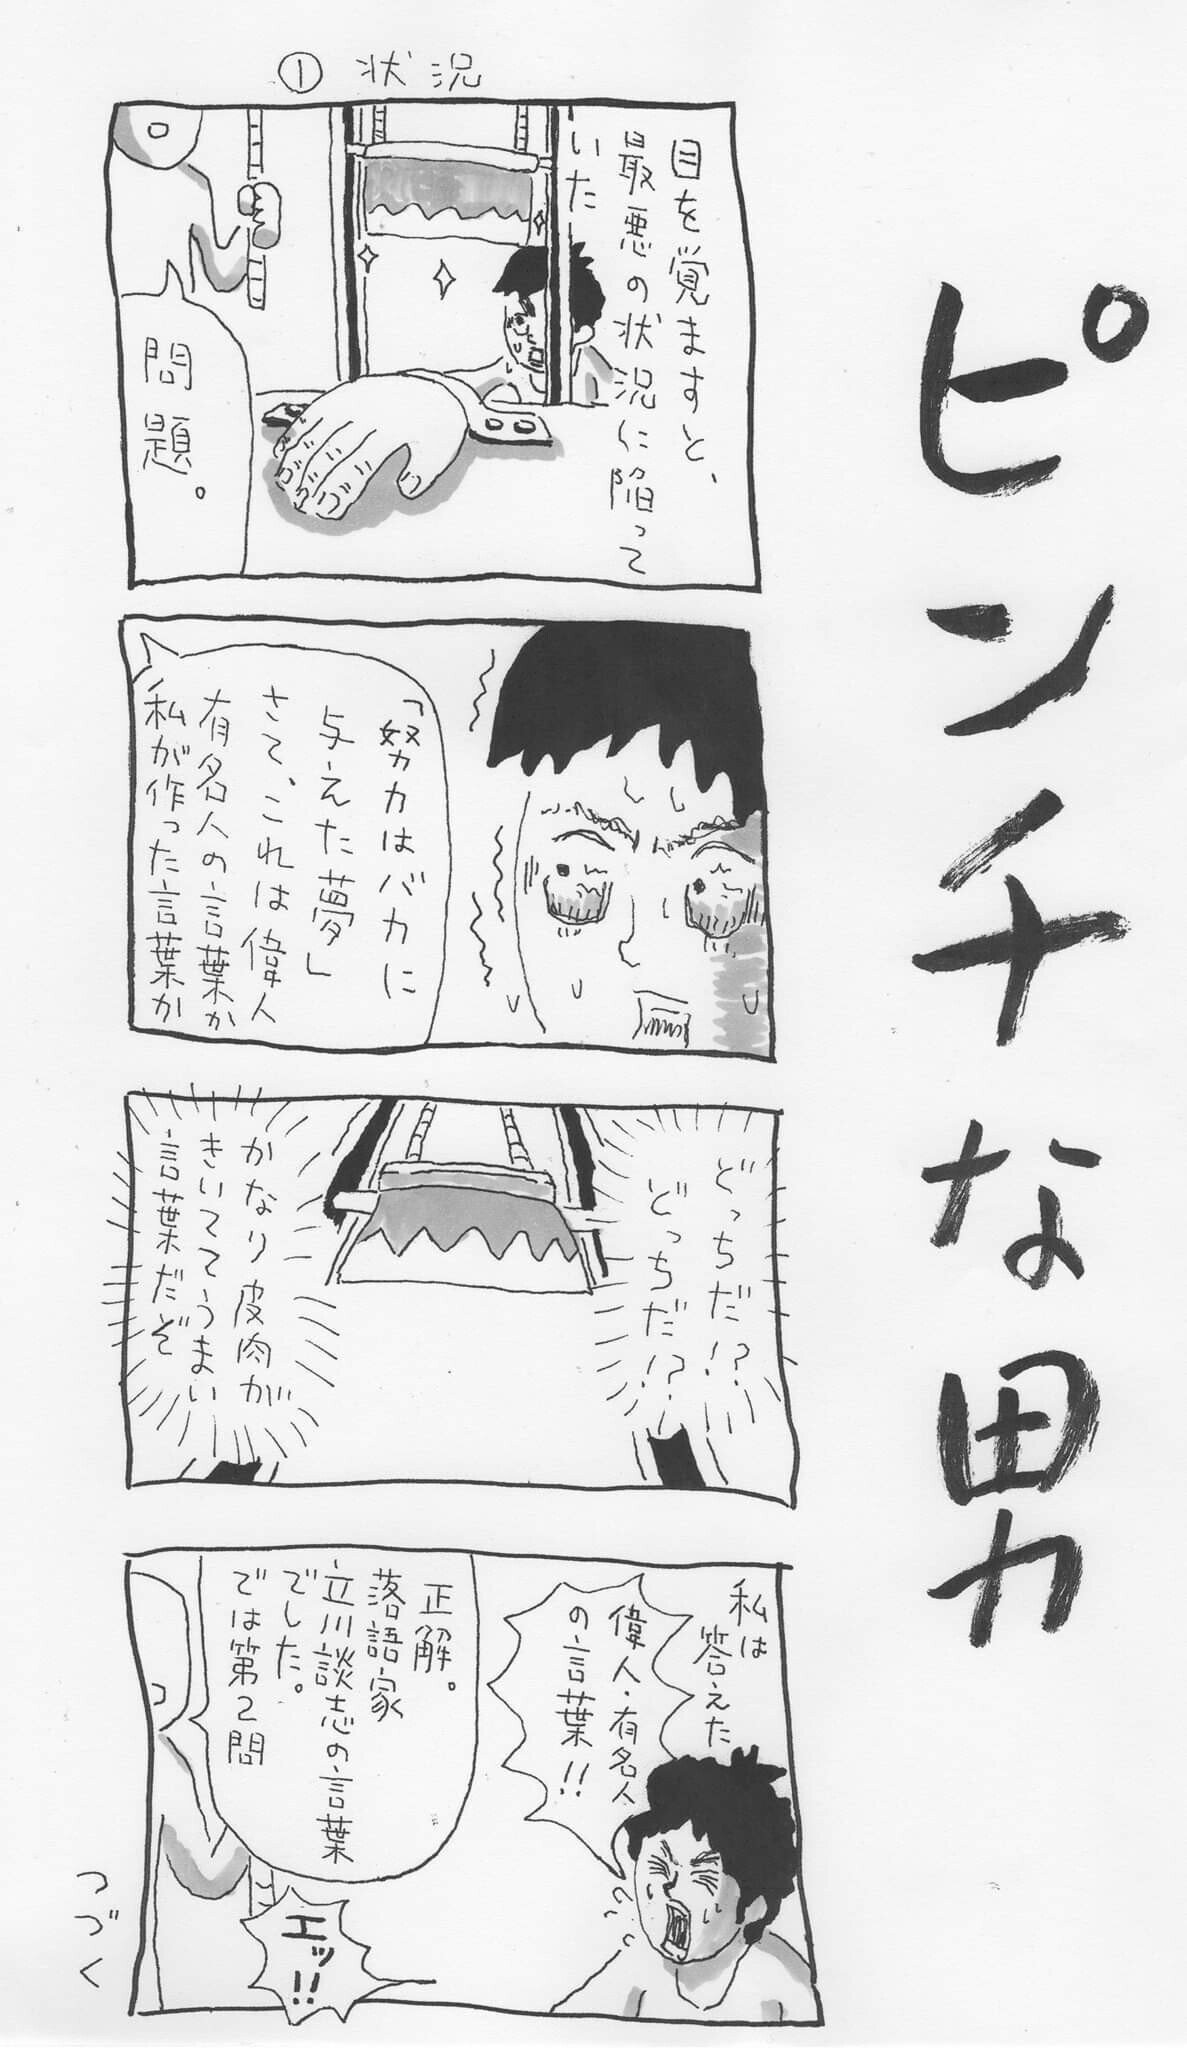 名言クイズ ピンチな男 努力とは 中川学 漫画家 Note